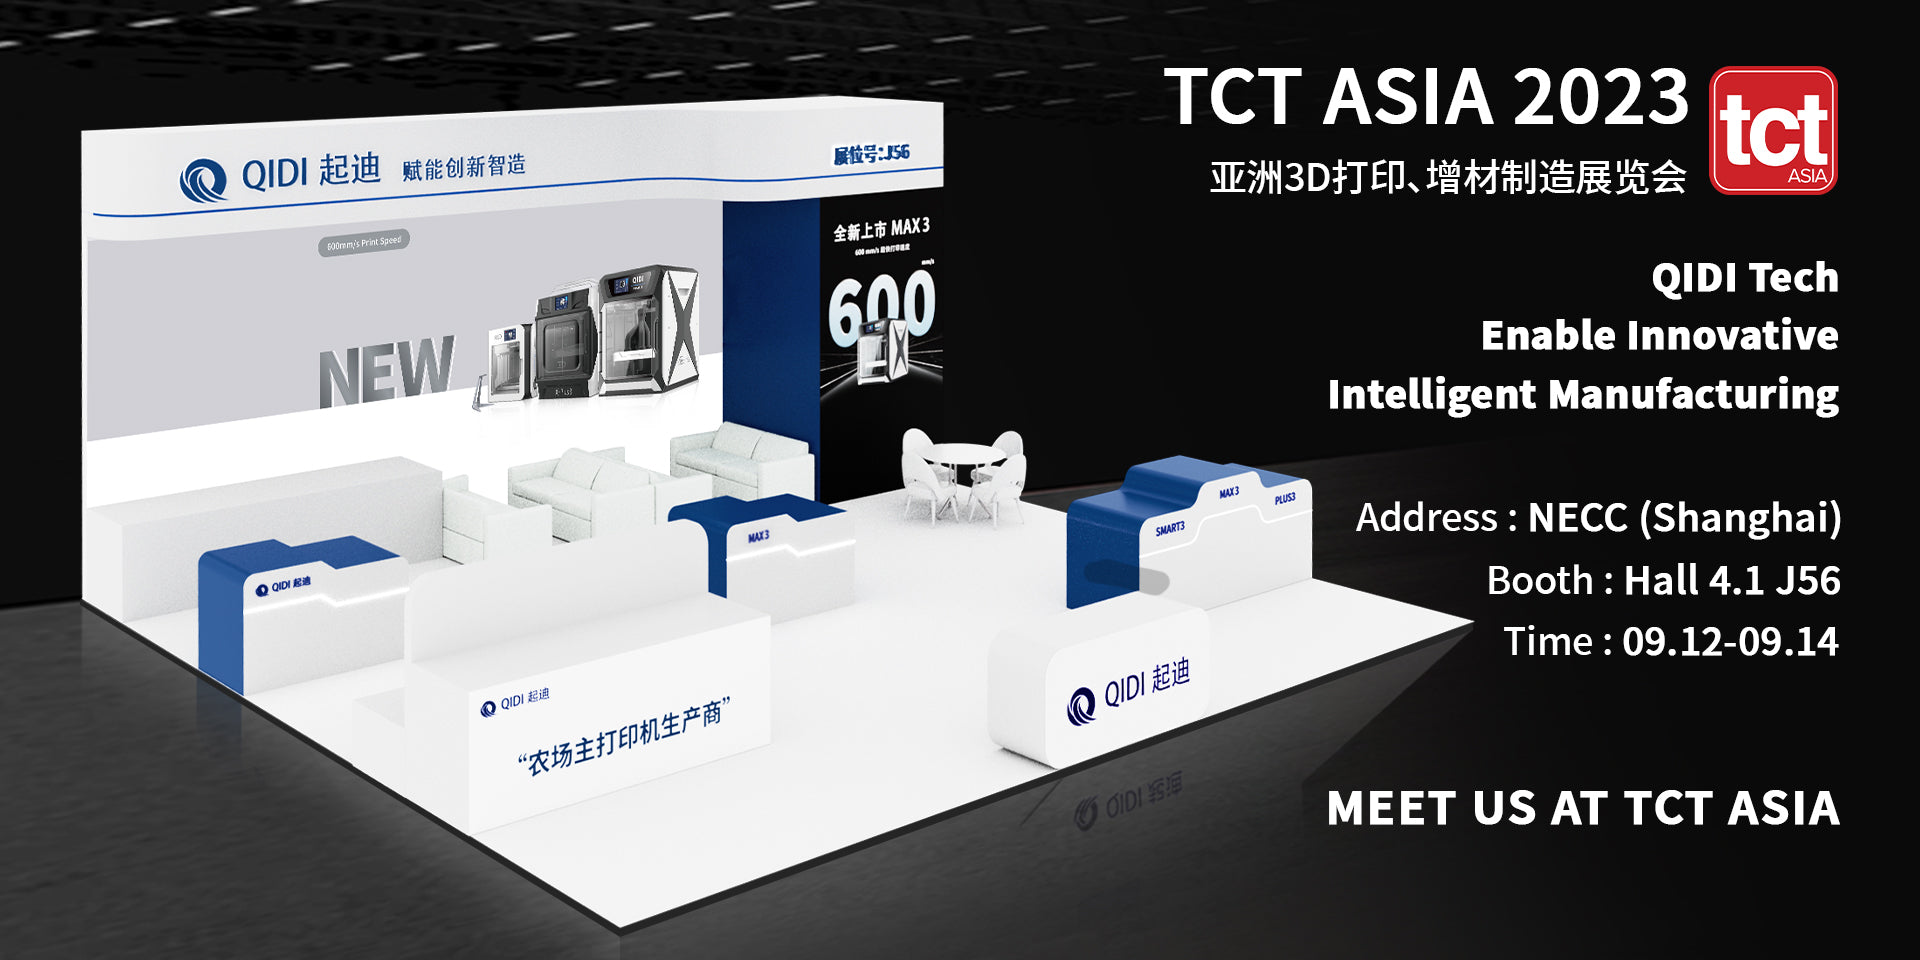 QIDI TECH stellt auf der TCT Asia neue 3D-Drucker vor